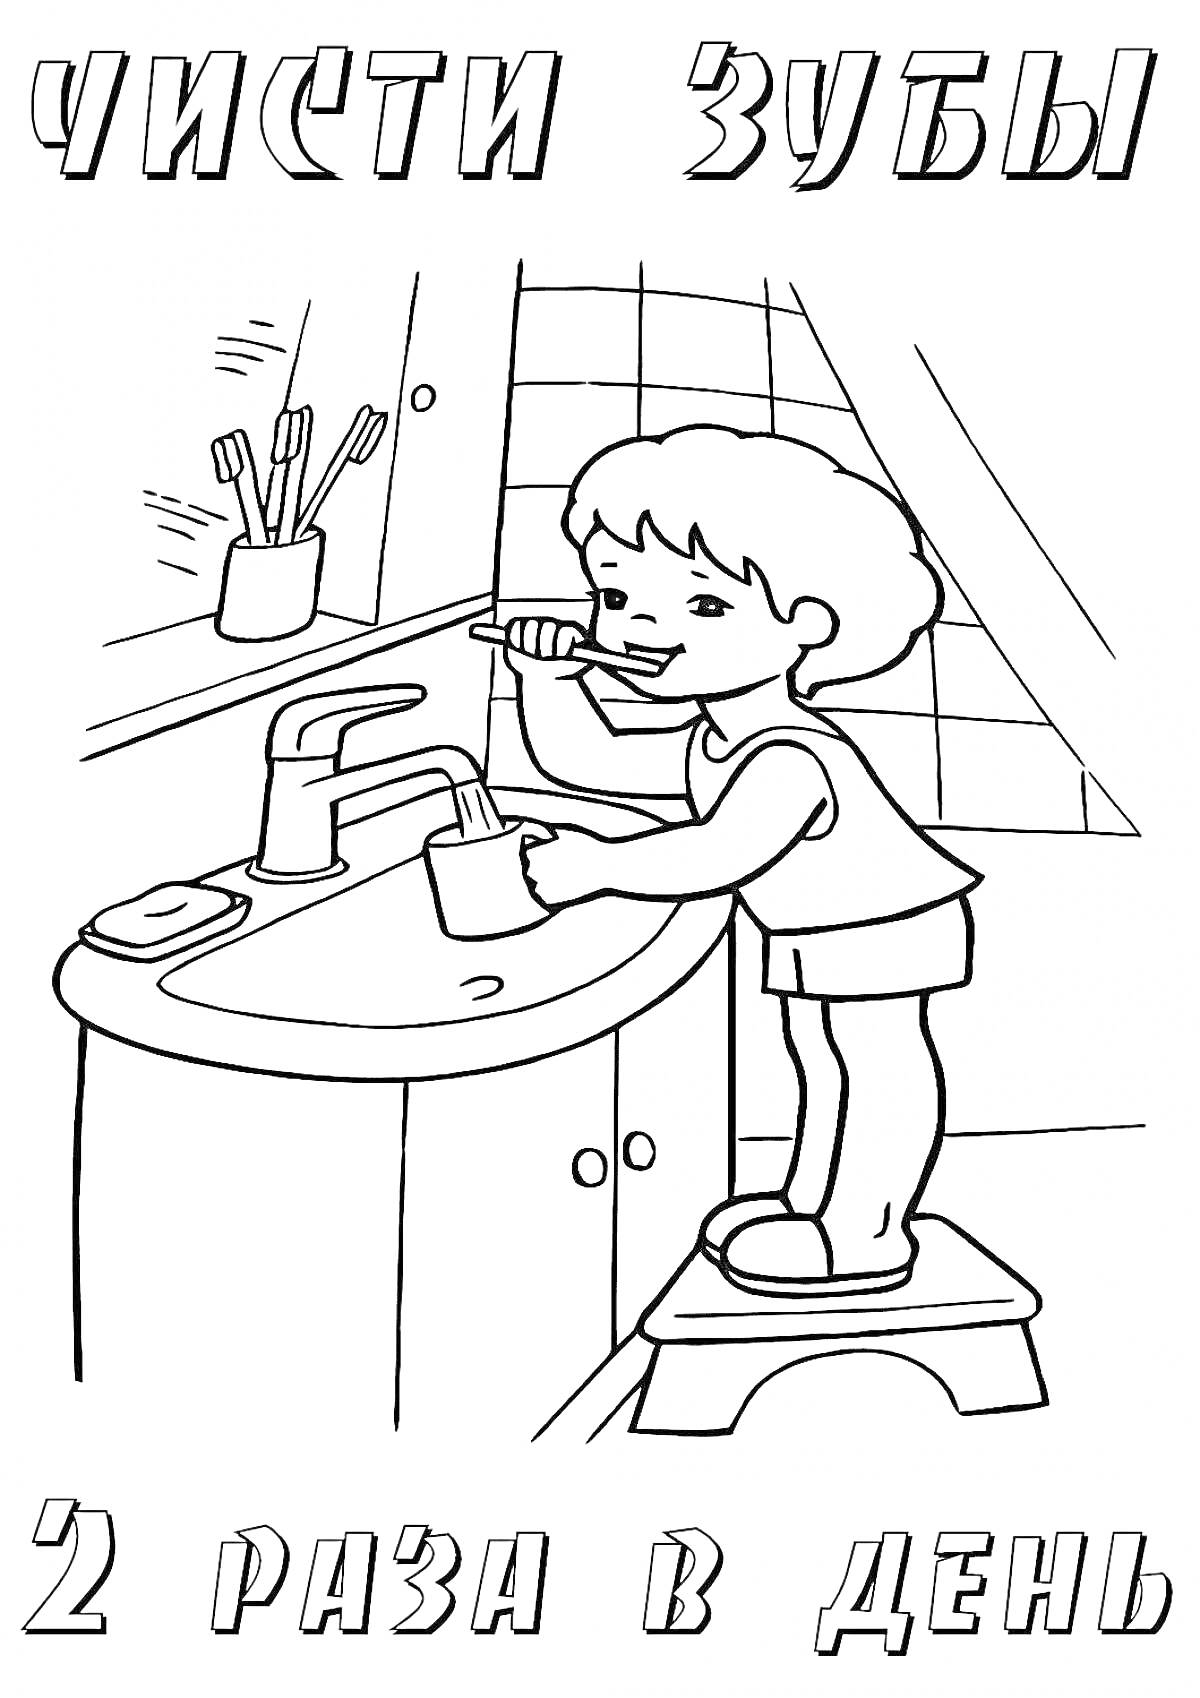 Мальчик чистит зубы в ванной комнате, стоя на табуретке; рядом раковина с краном, стакан с зубными щетками и мыльница; на заднем плане плитка.